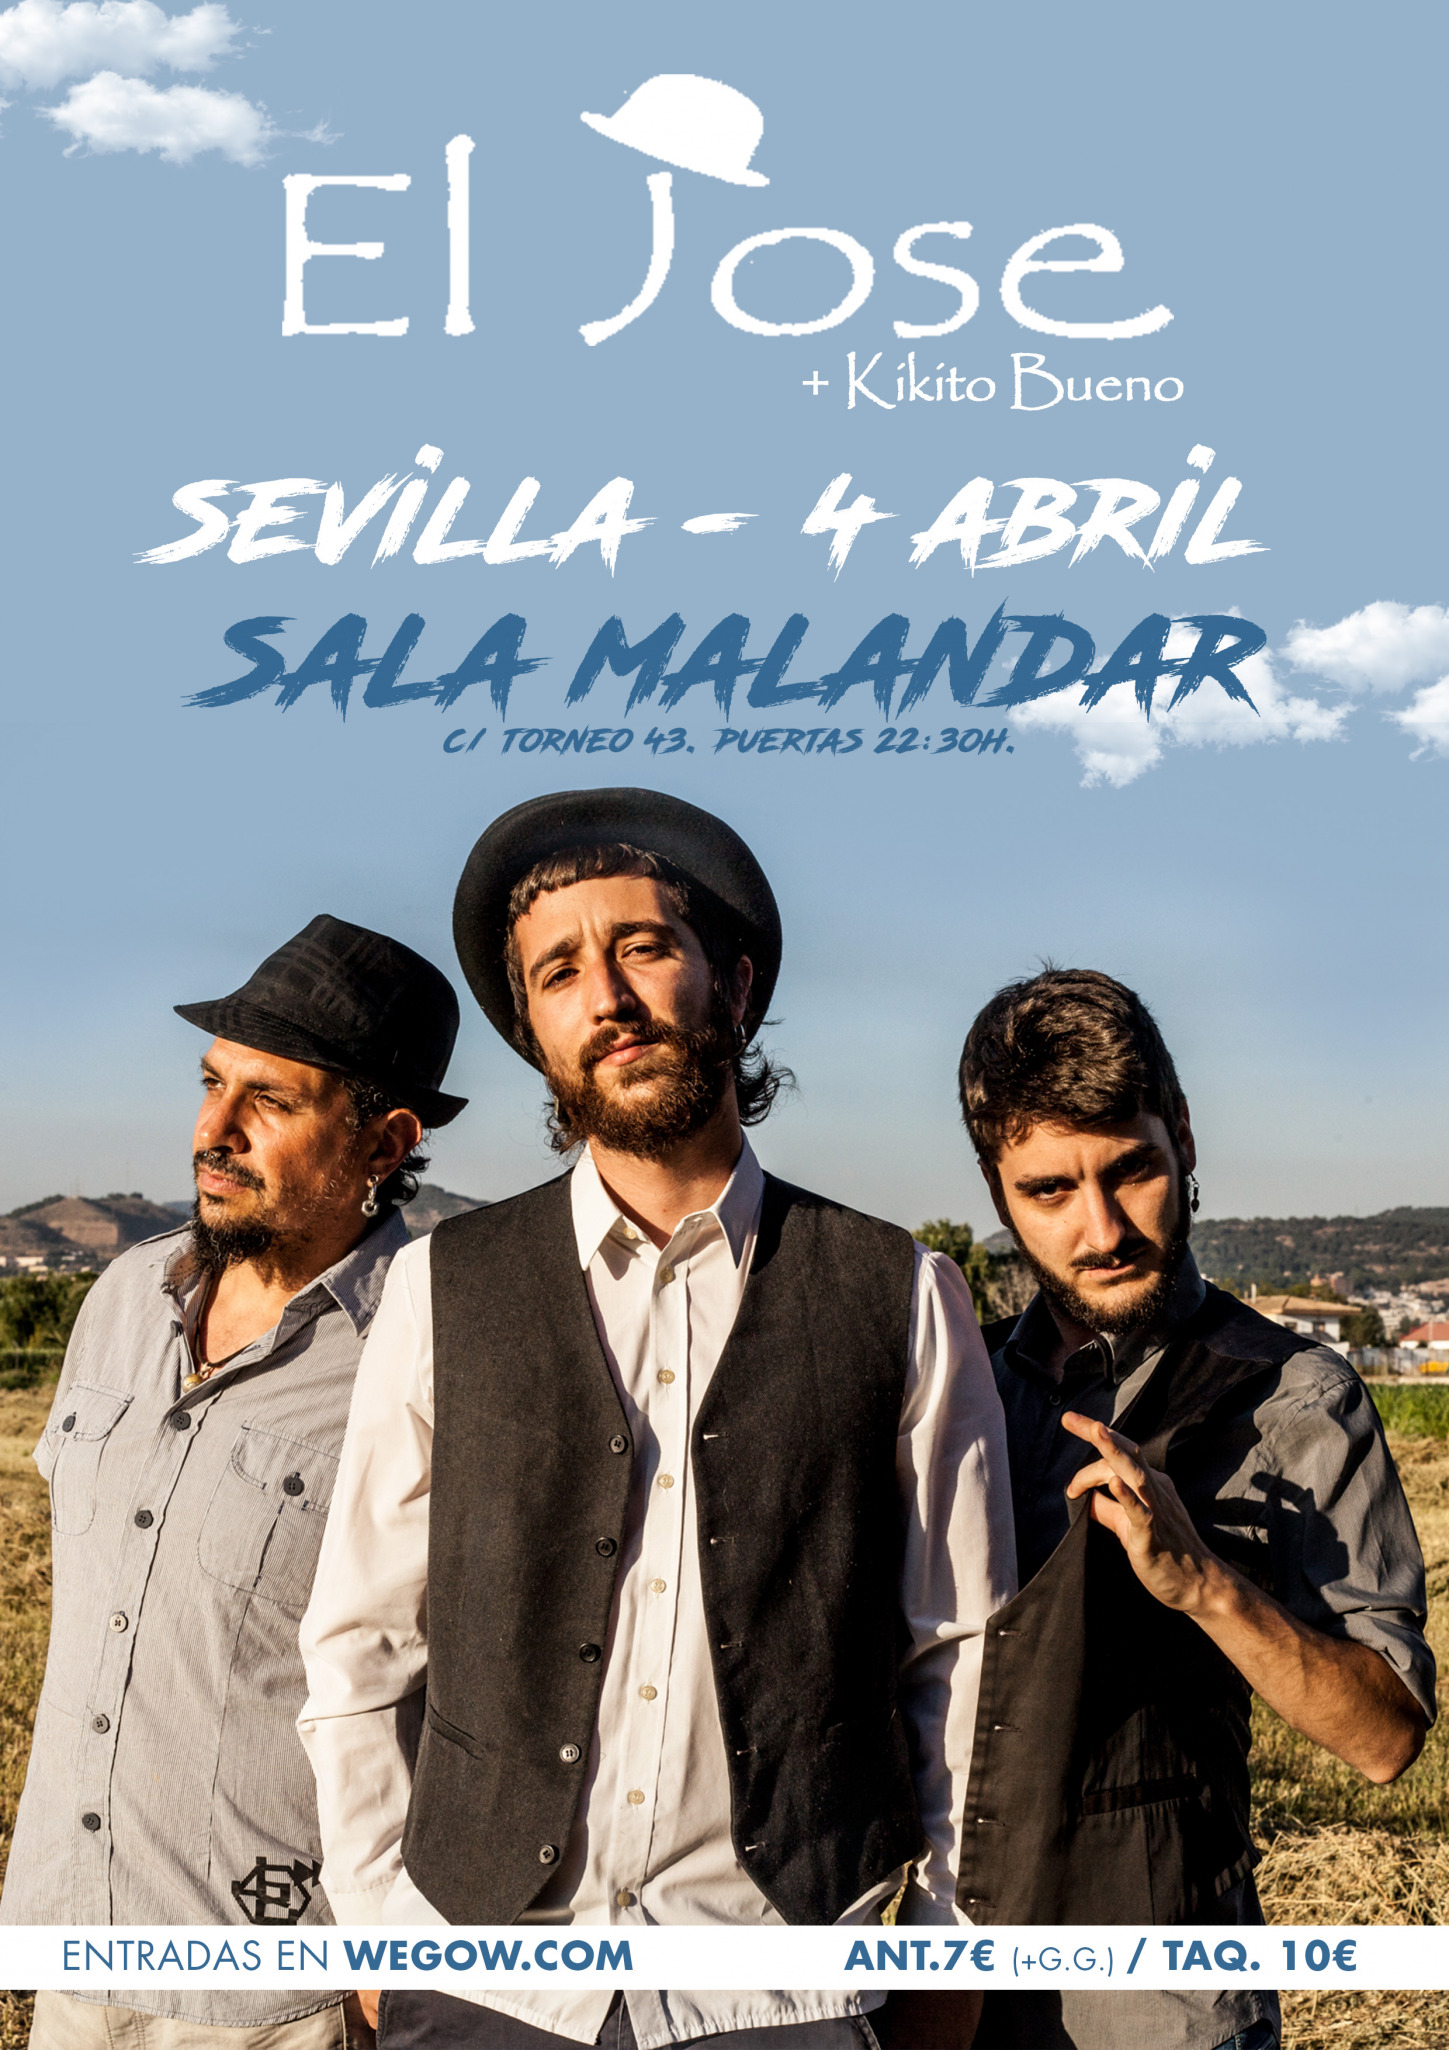 El Jose + Kikito Bueno en Sala Malandar de Sevilla